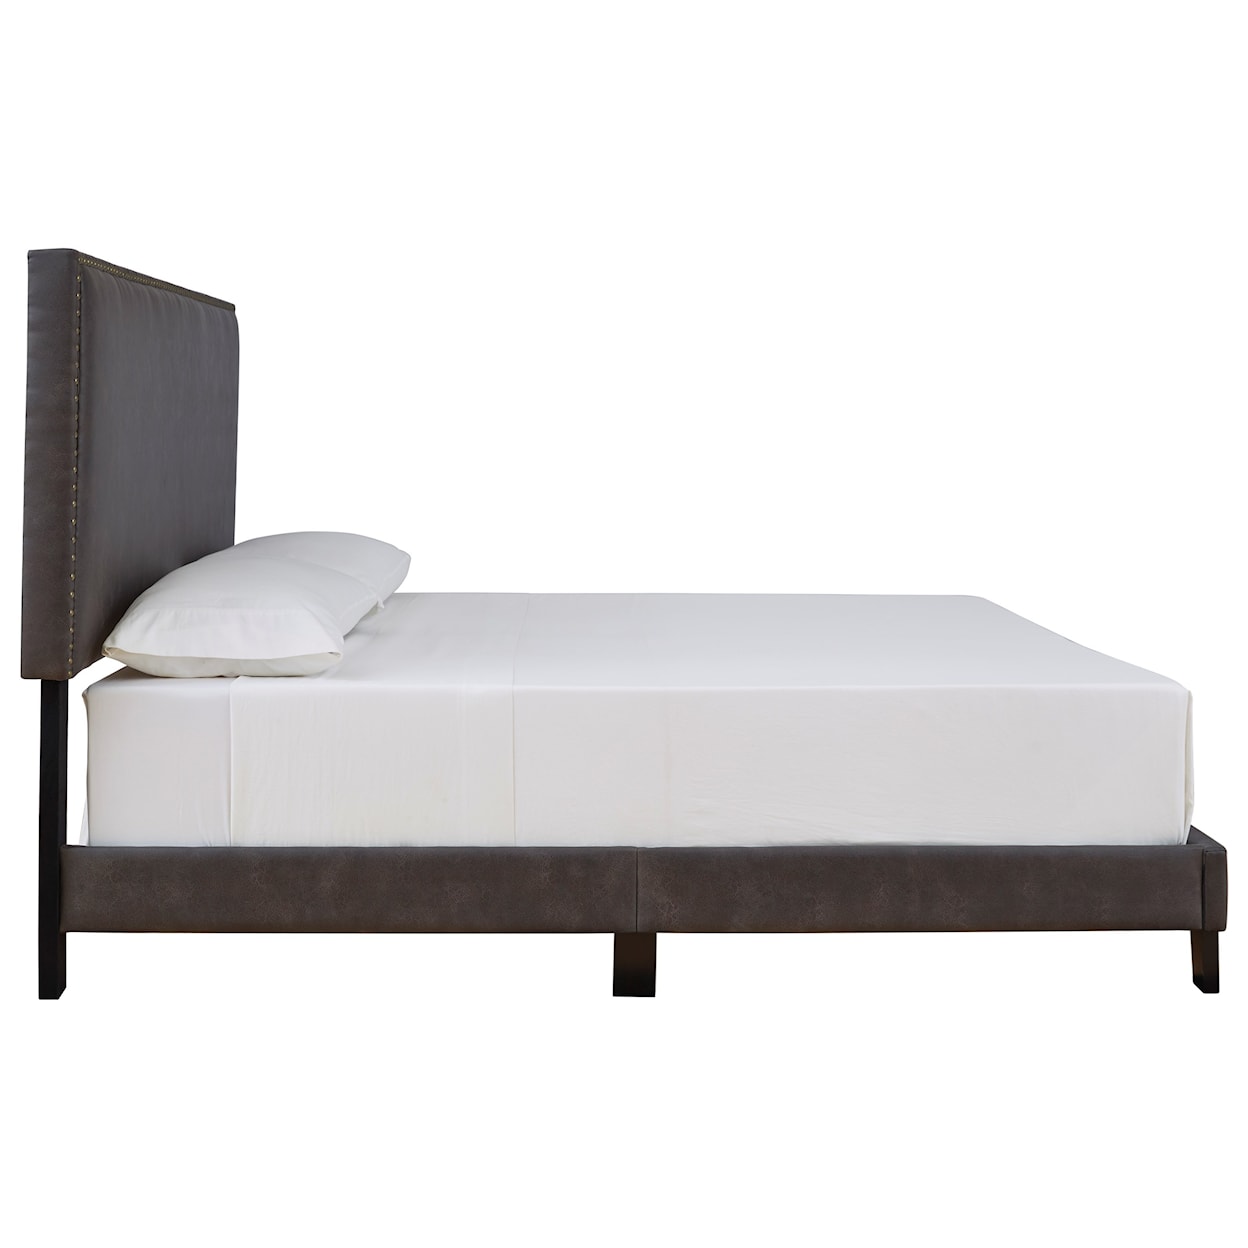 Ashley Furniture Signature Design Vintasso Queen Upholstered Bed